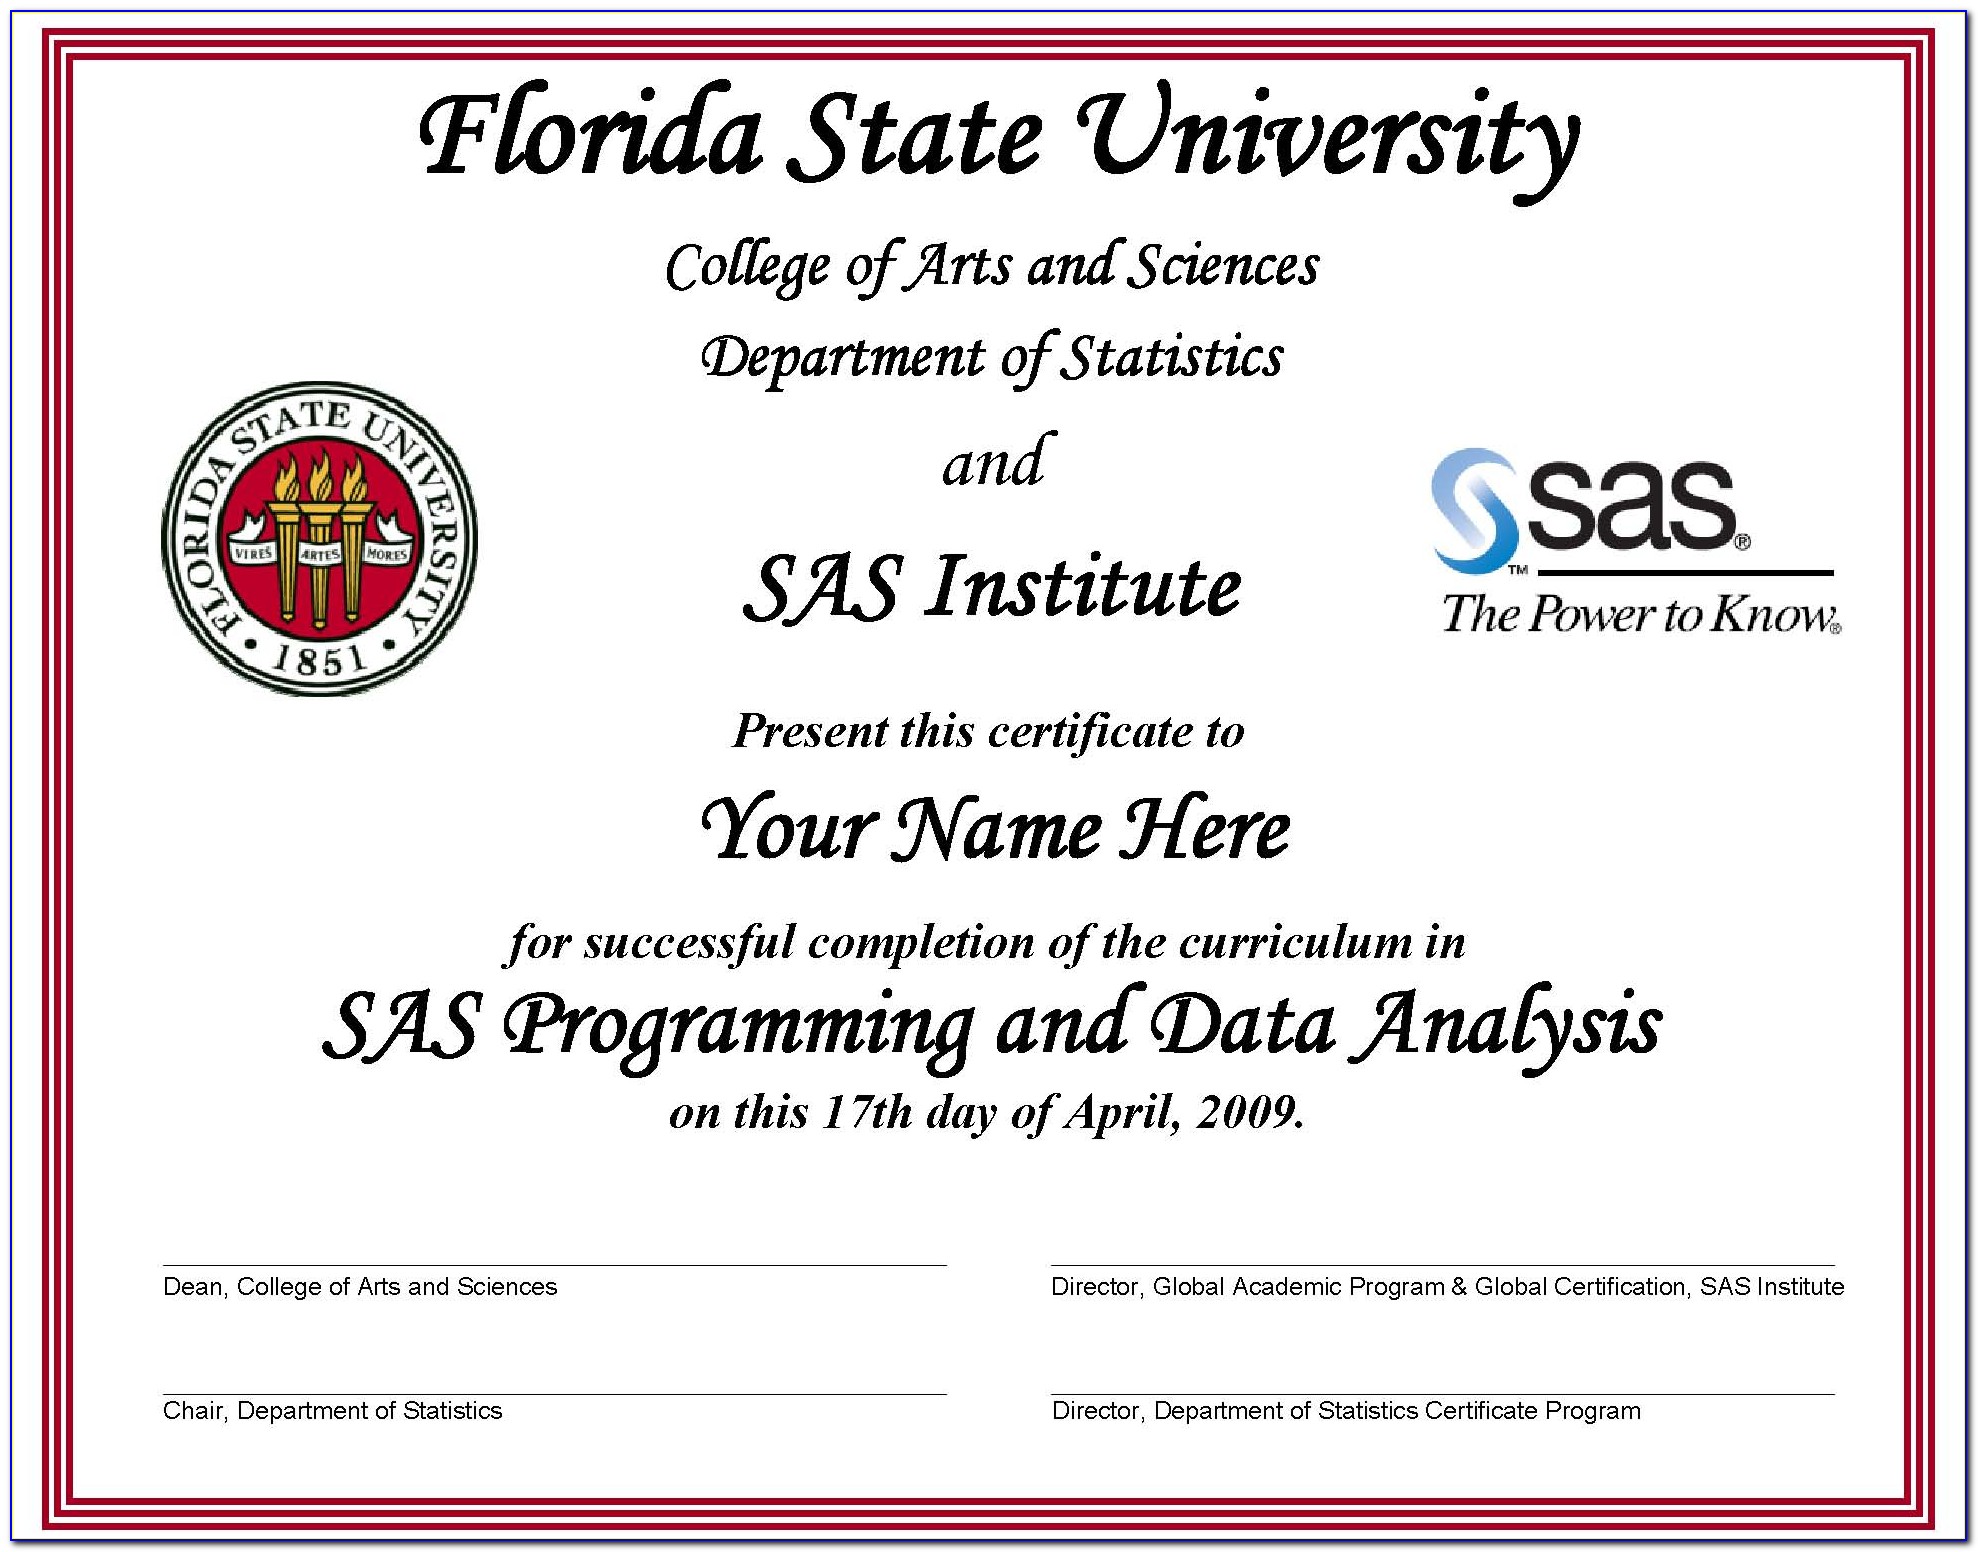 Fsu Certificate Programs Online